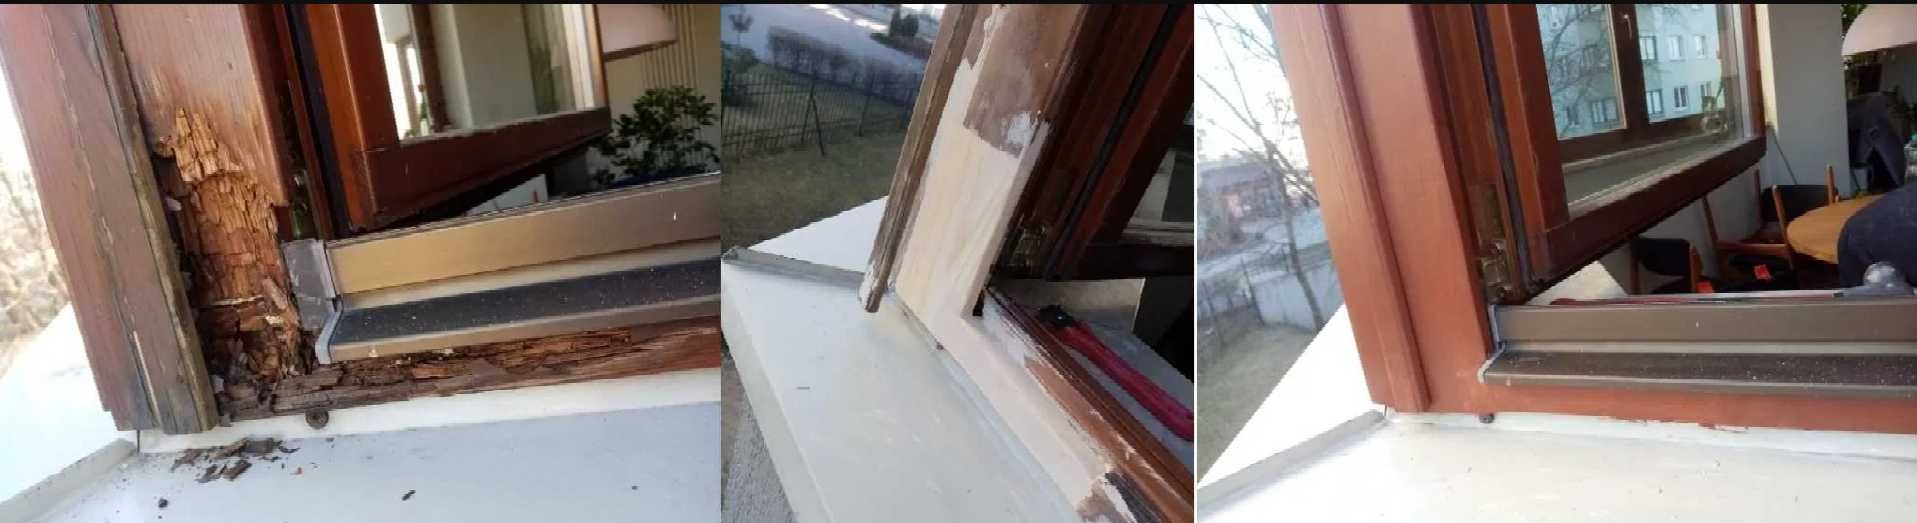 Renowacja, naprawa, malowanie okien drewnianych